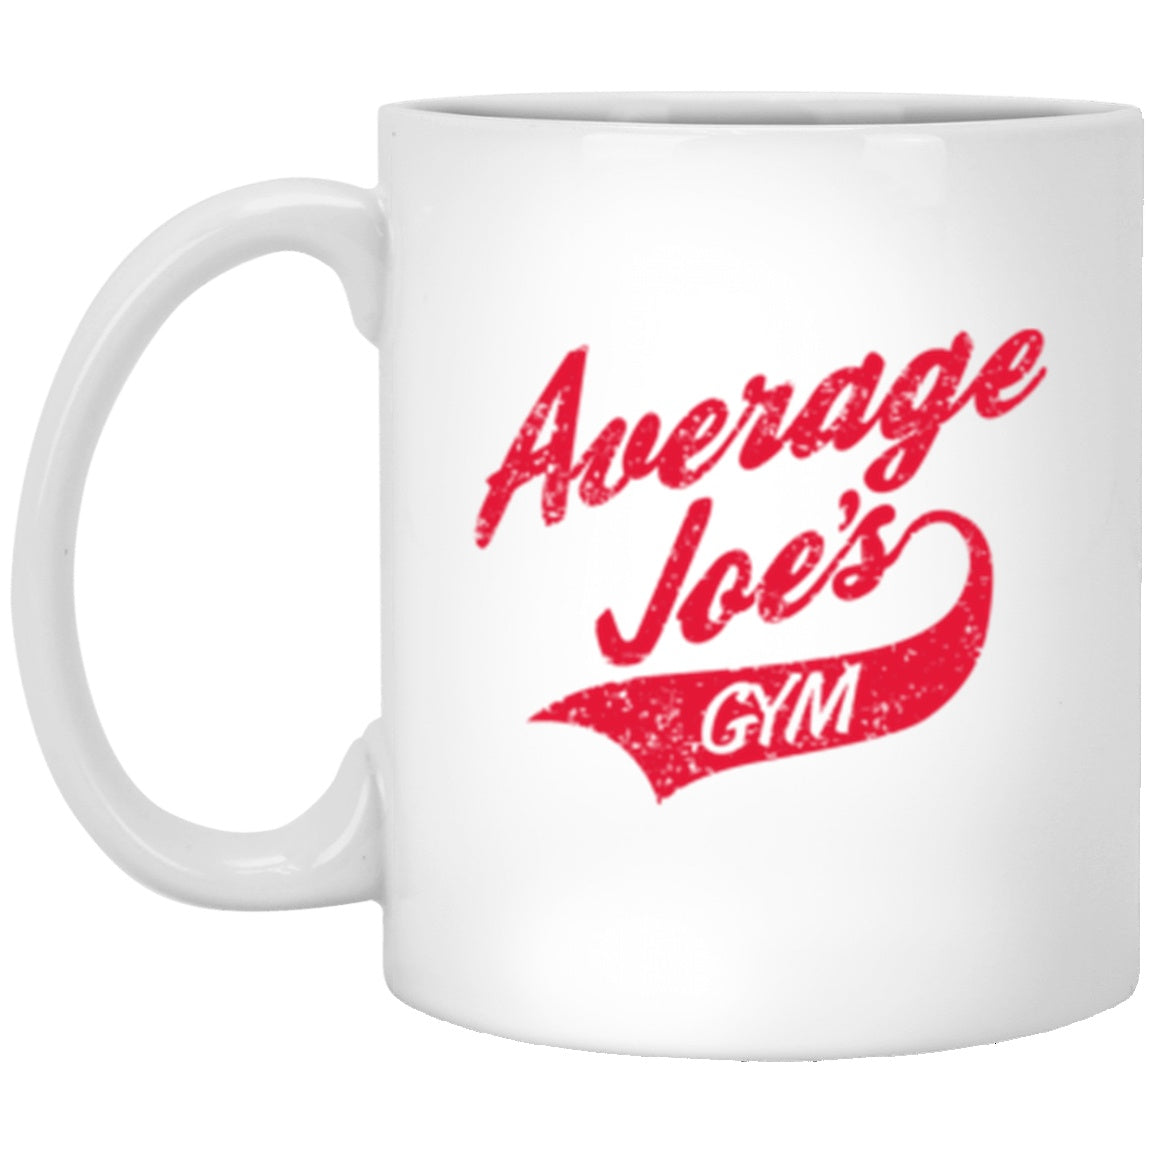 Average Joes Gym White Mug 11oz (2-sided) – The Dude's Threads